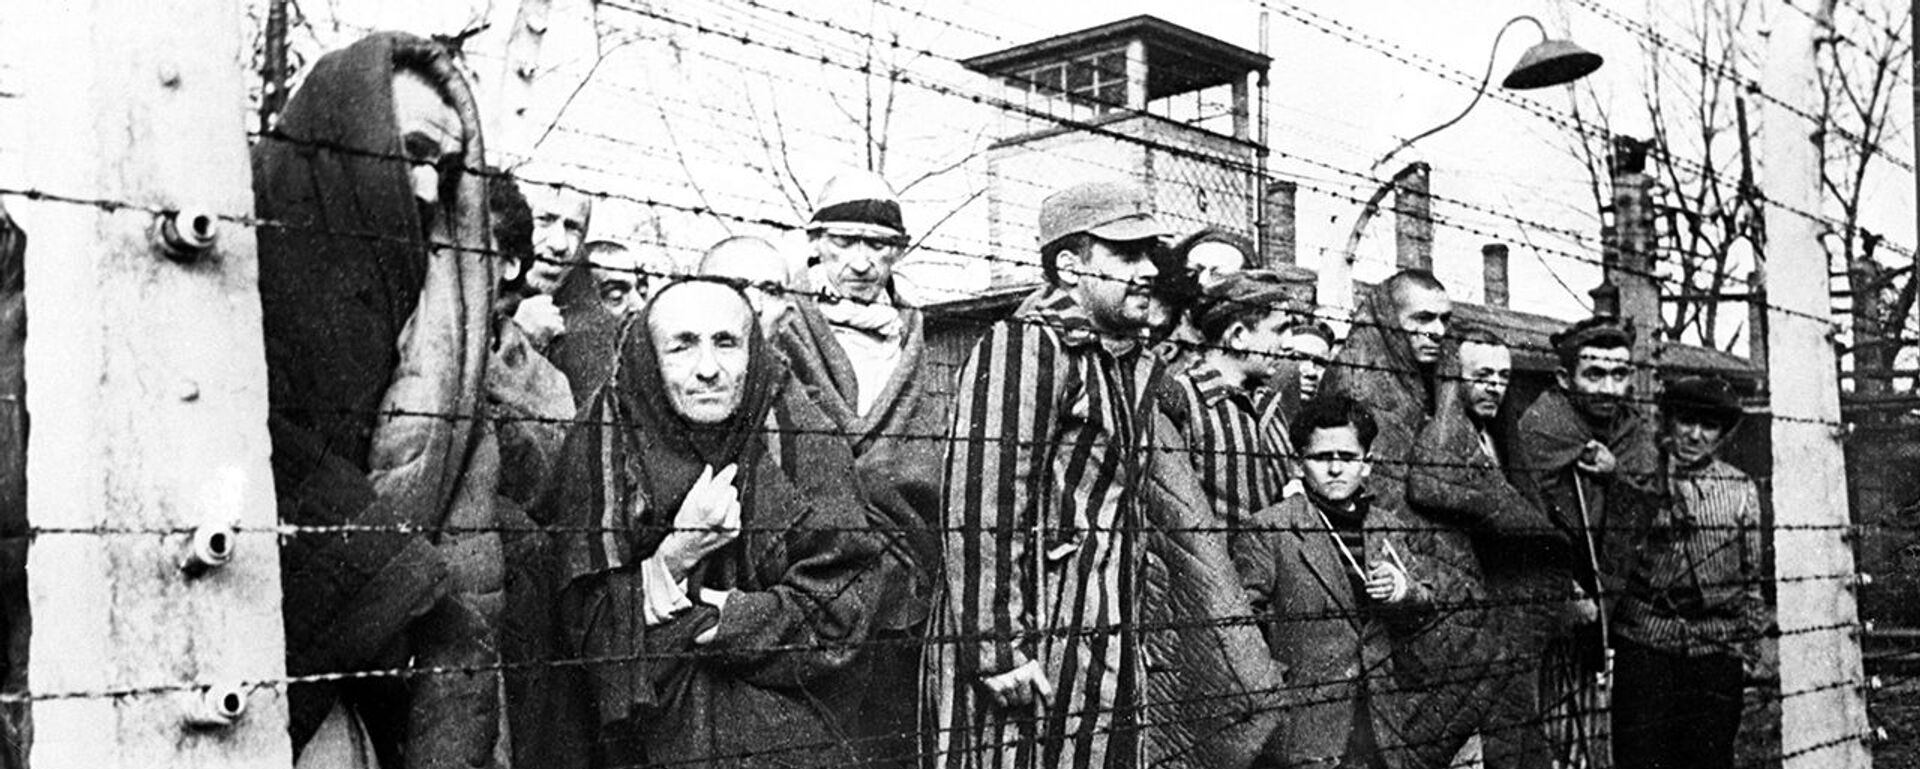 Холокост означает всесожжение: почему катастрофа стала возможной - Sputnik Беларусь, 1920, 27.01.2021